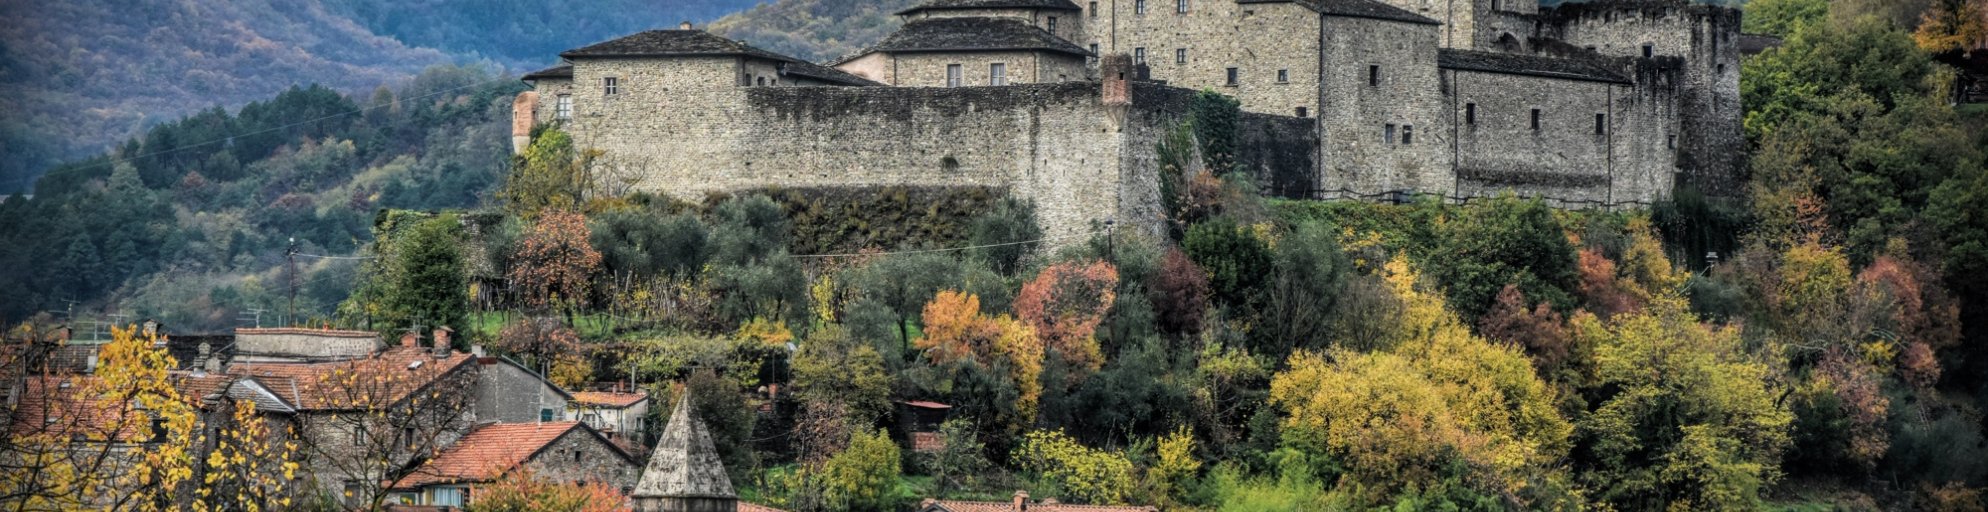 Castillo de Piagnaro